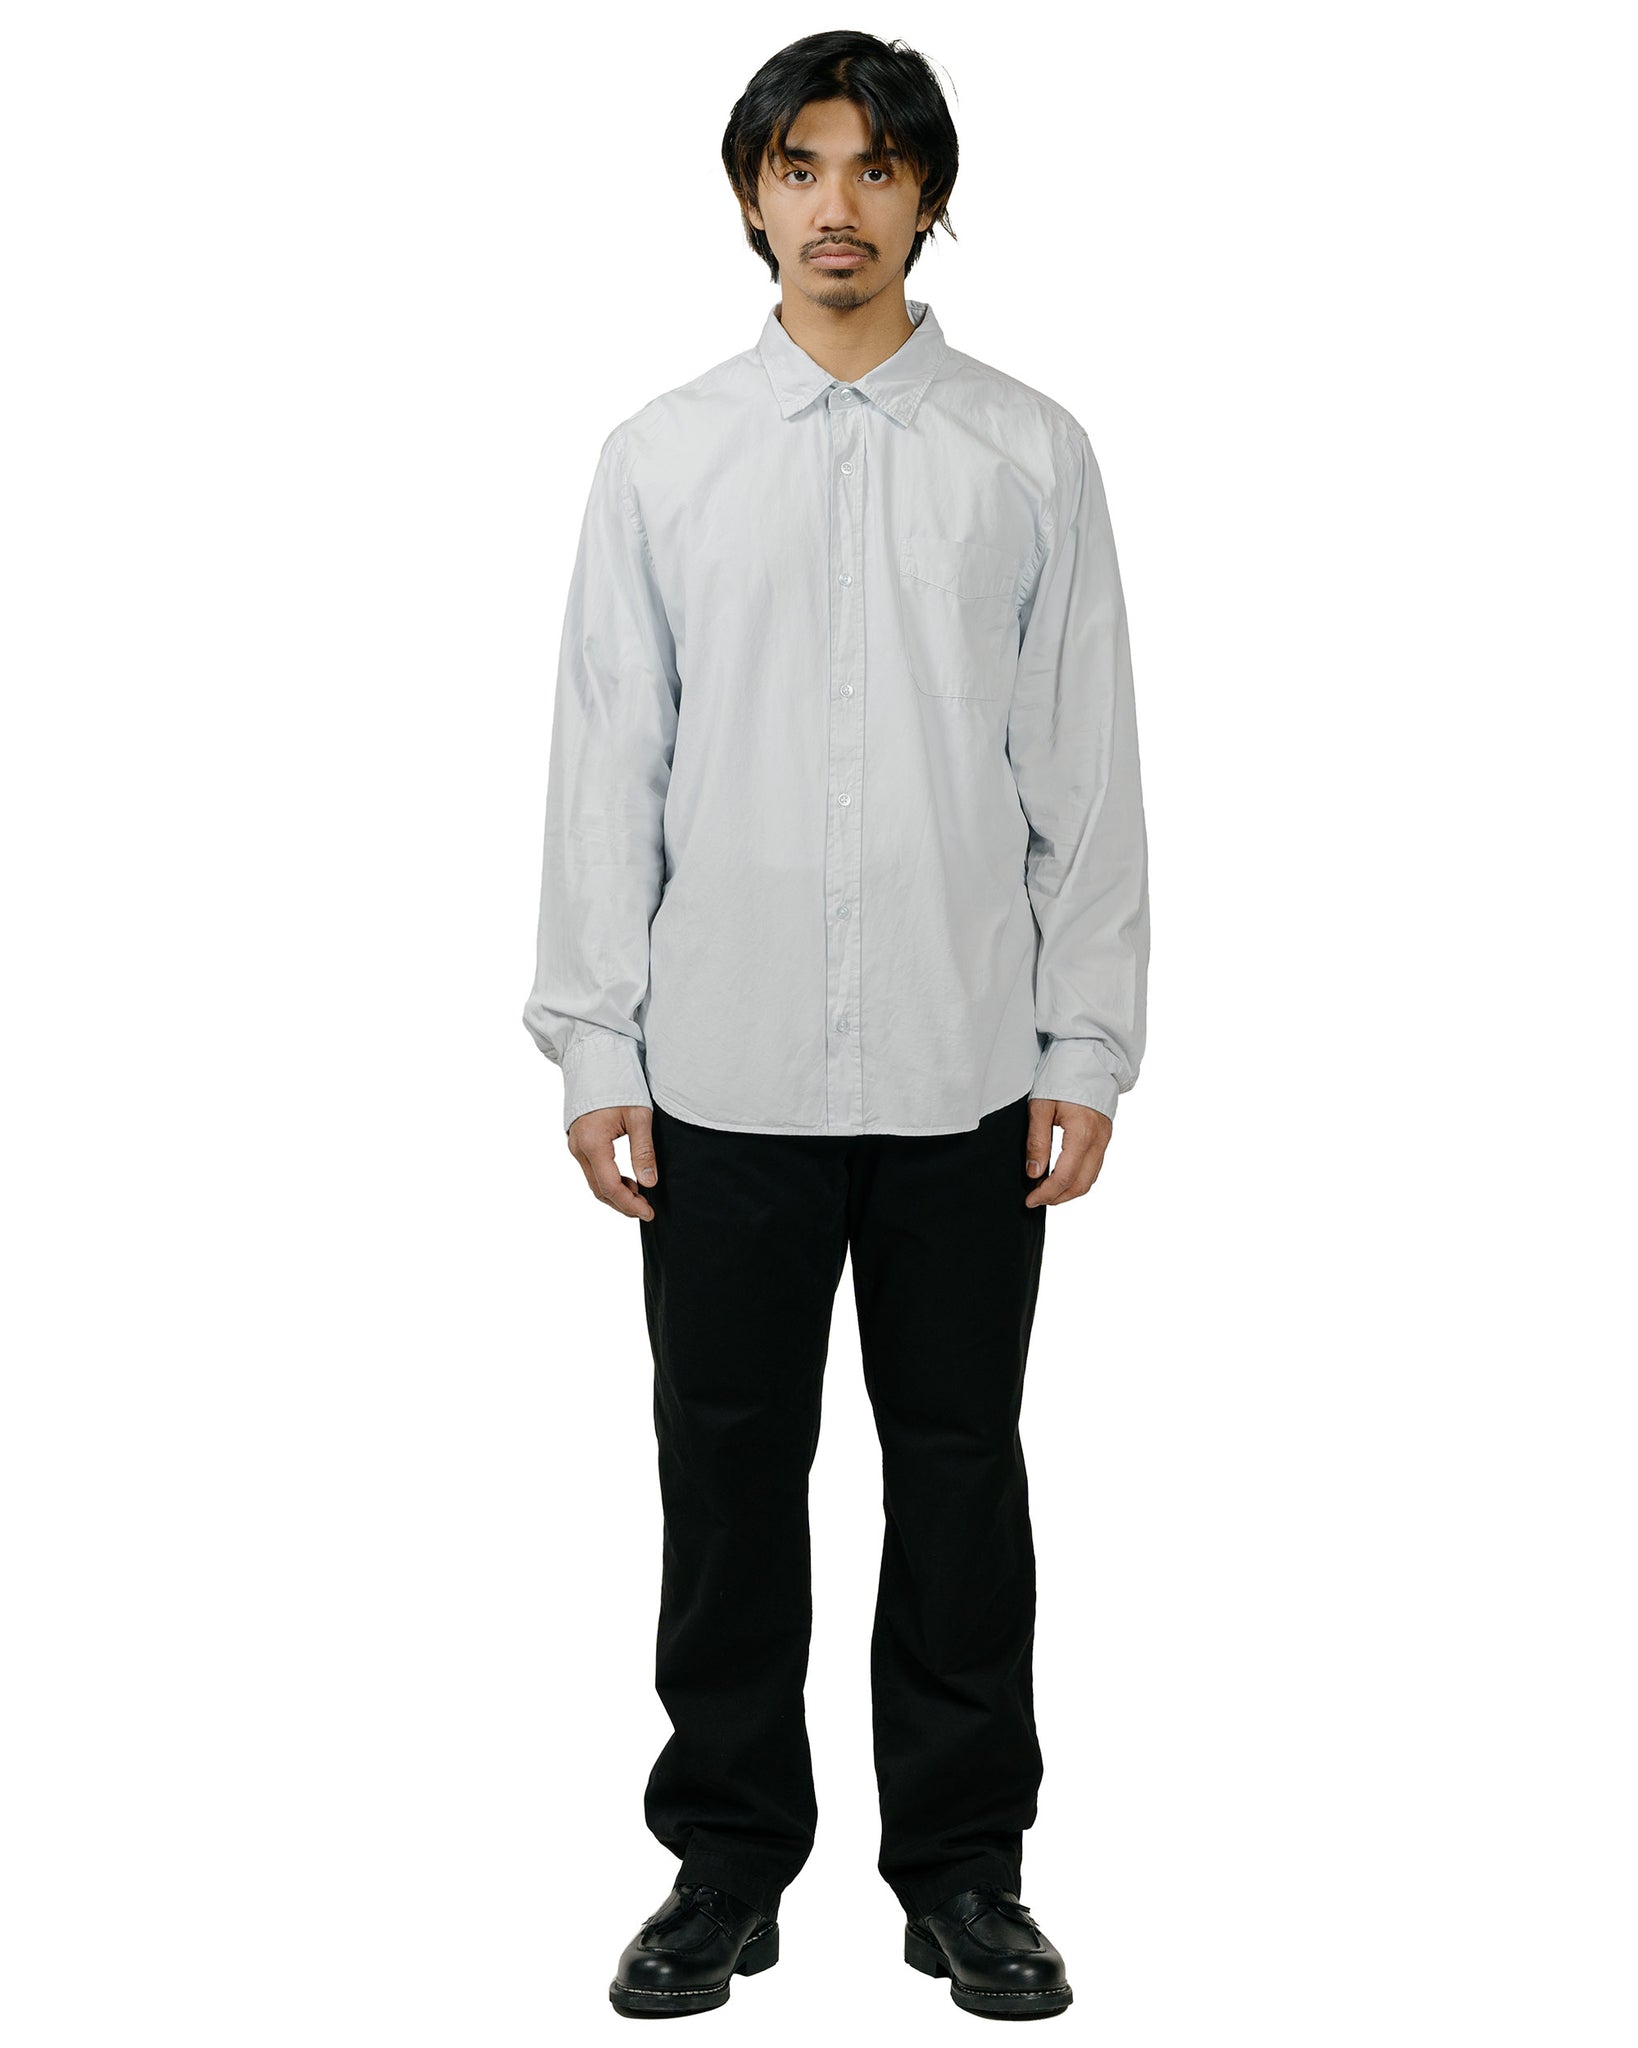 Save Khaki United Poplin Standard Shirt Light Blue model full